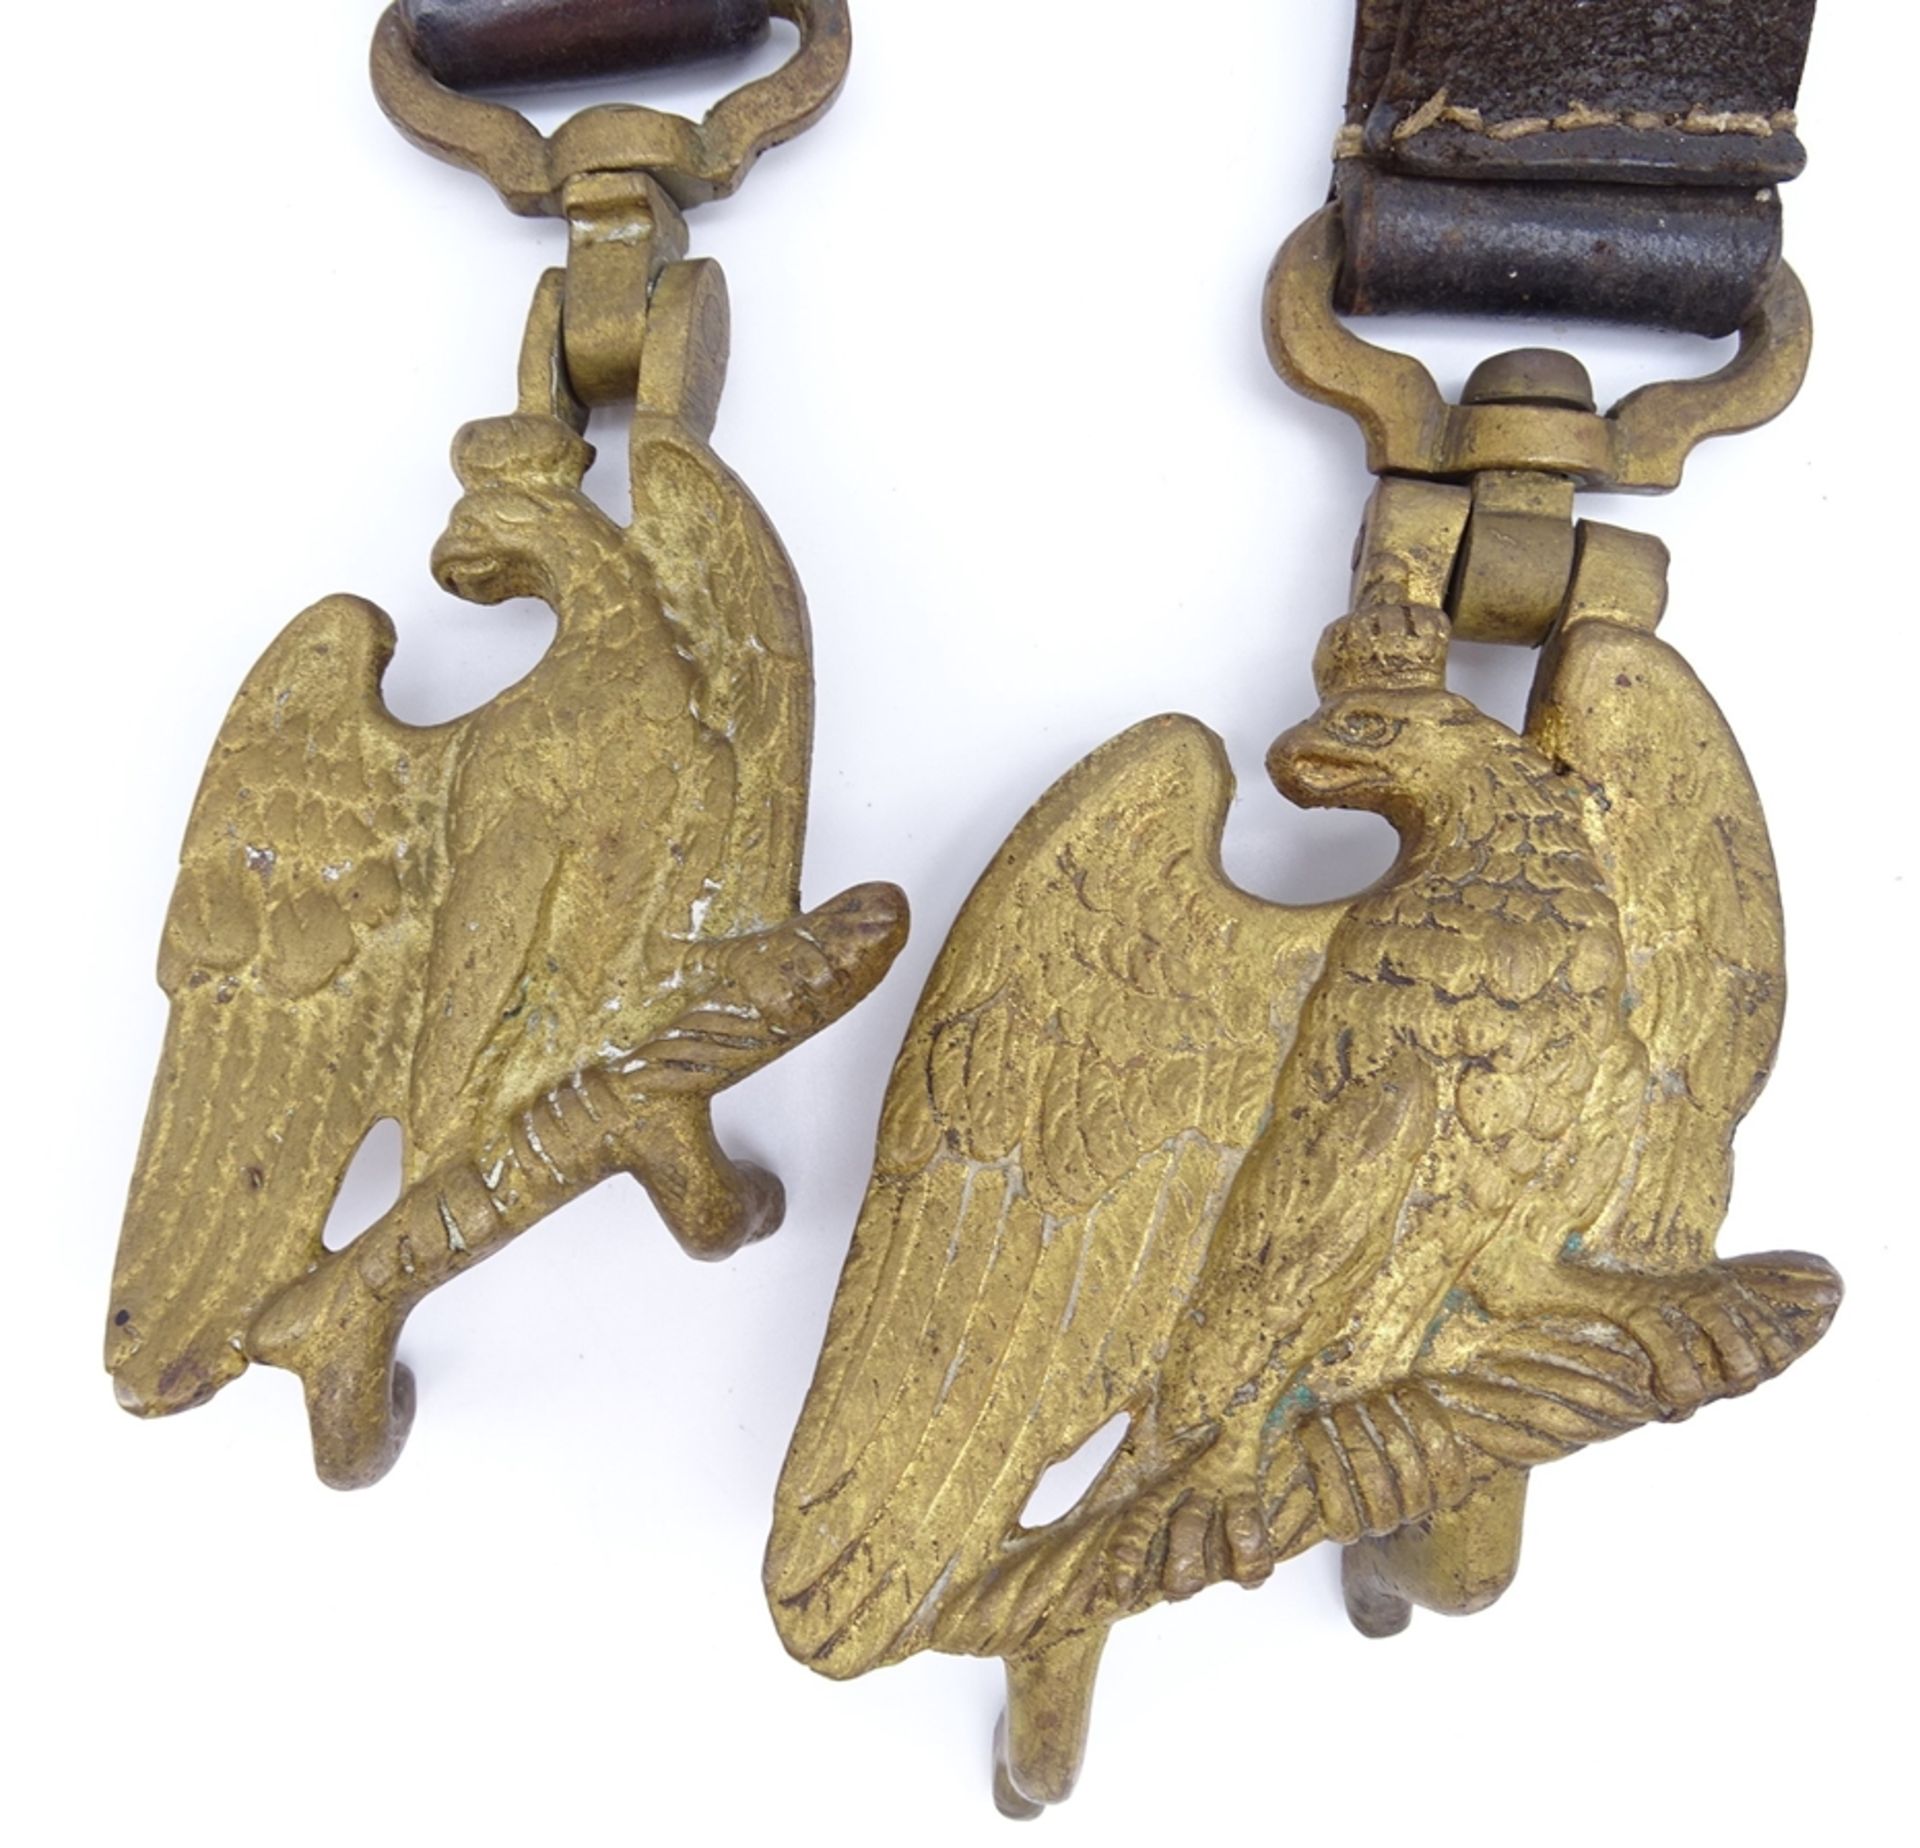 2 Trommelhalter mit Preußischem Adler, 1. WK, mit Altersspuren - Bild 2 aus 4